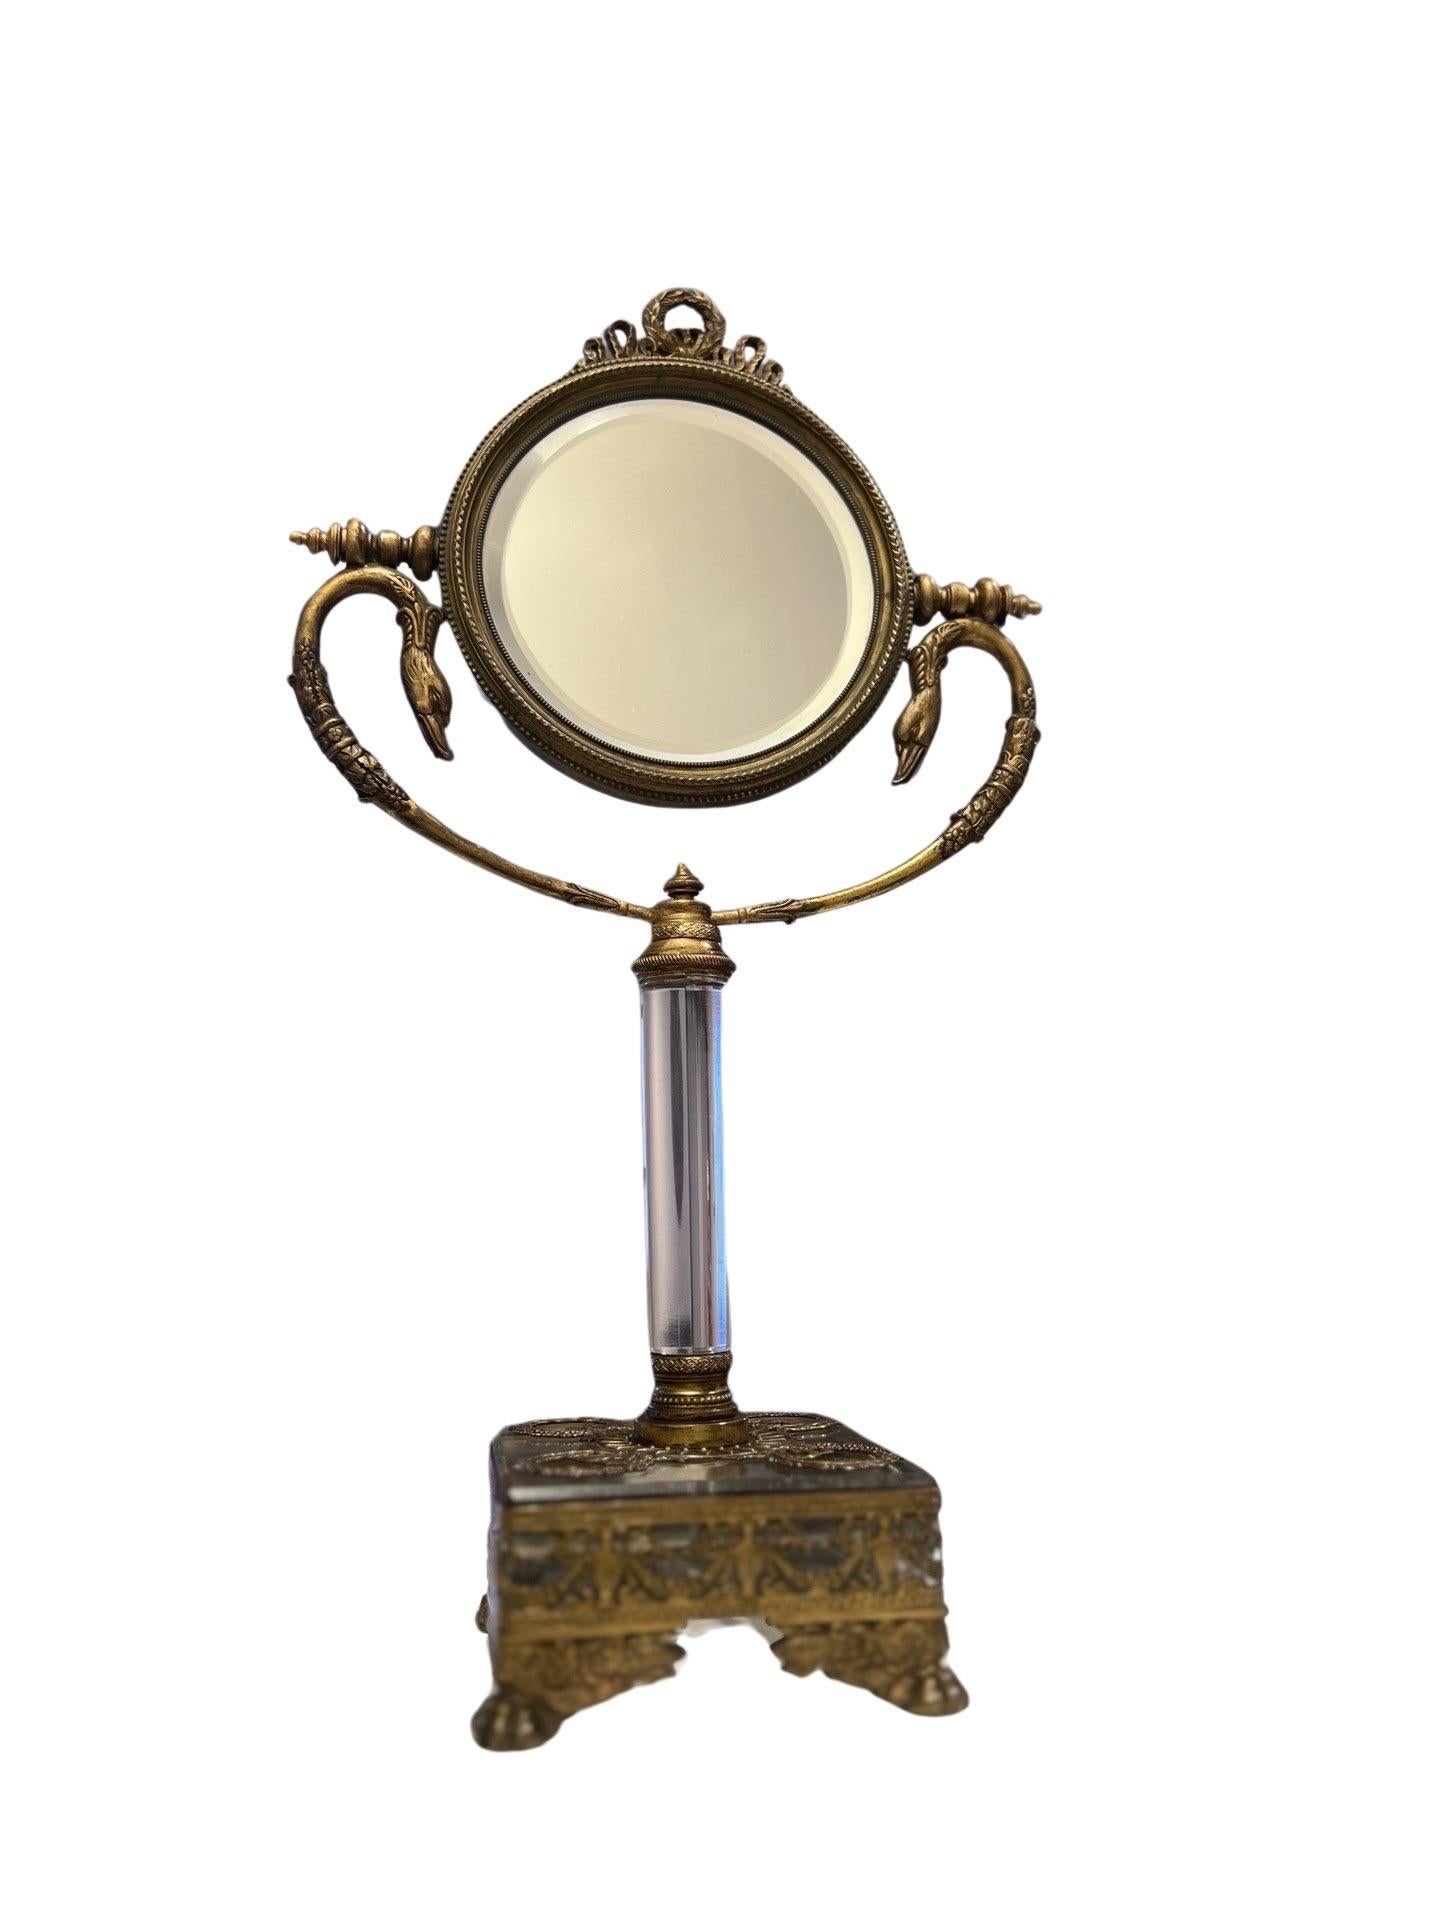 Français, début ou milieu du XIXe siècle.

Un superbe miroir de courtoisie néoclassique français. Le miroir en verre biseauté (double face) est surmonté d'un fleuron en forme de couronne de laurier, de supports en forme de têtes de cygne opposées et